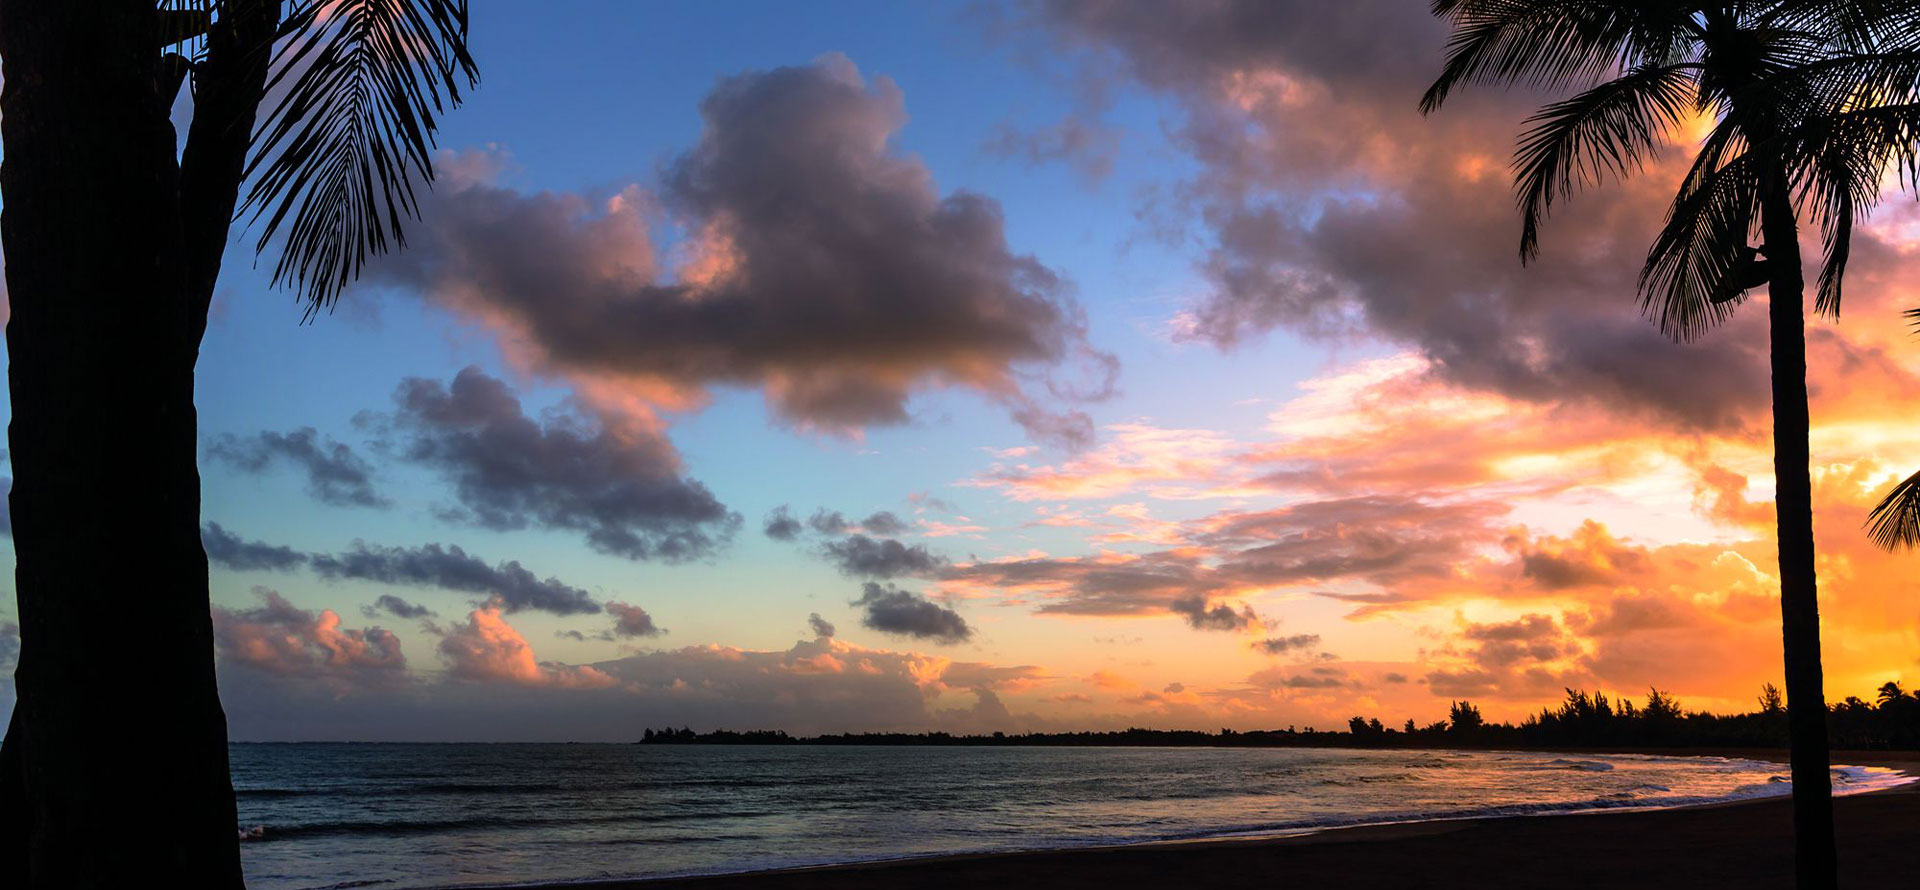 Puerto rico honeymoon resorts sunset.